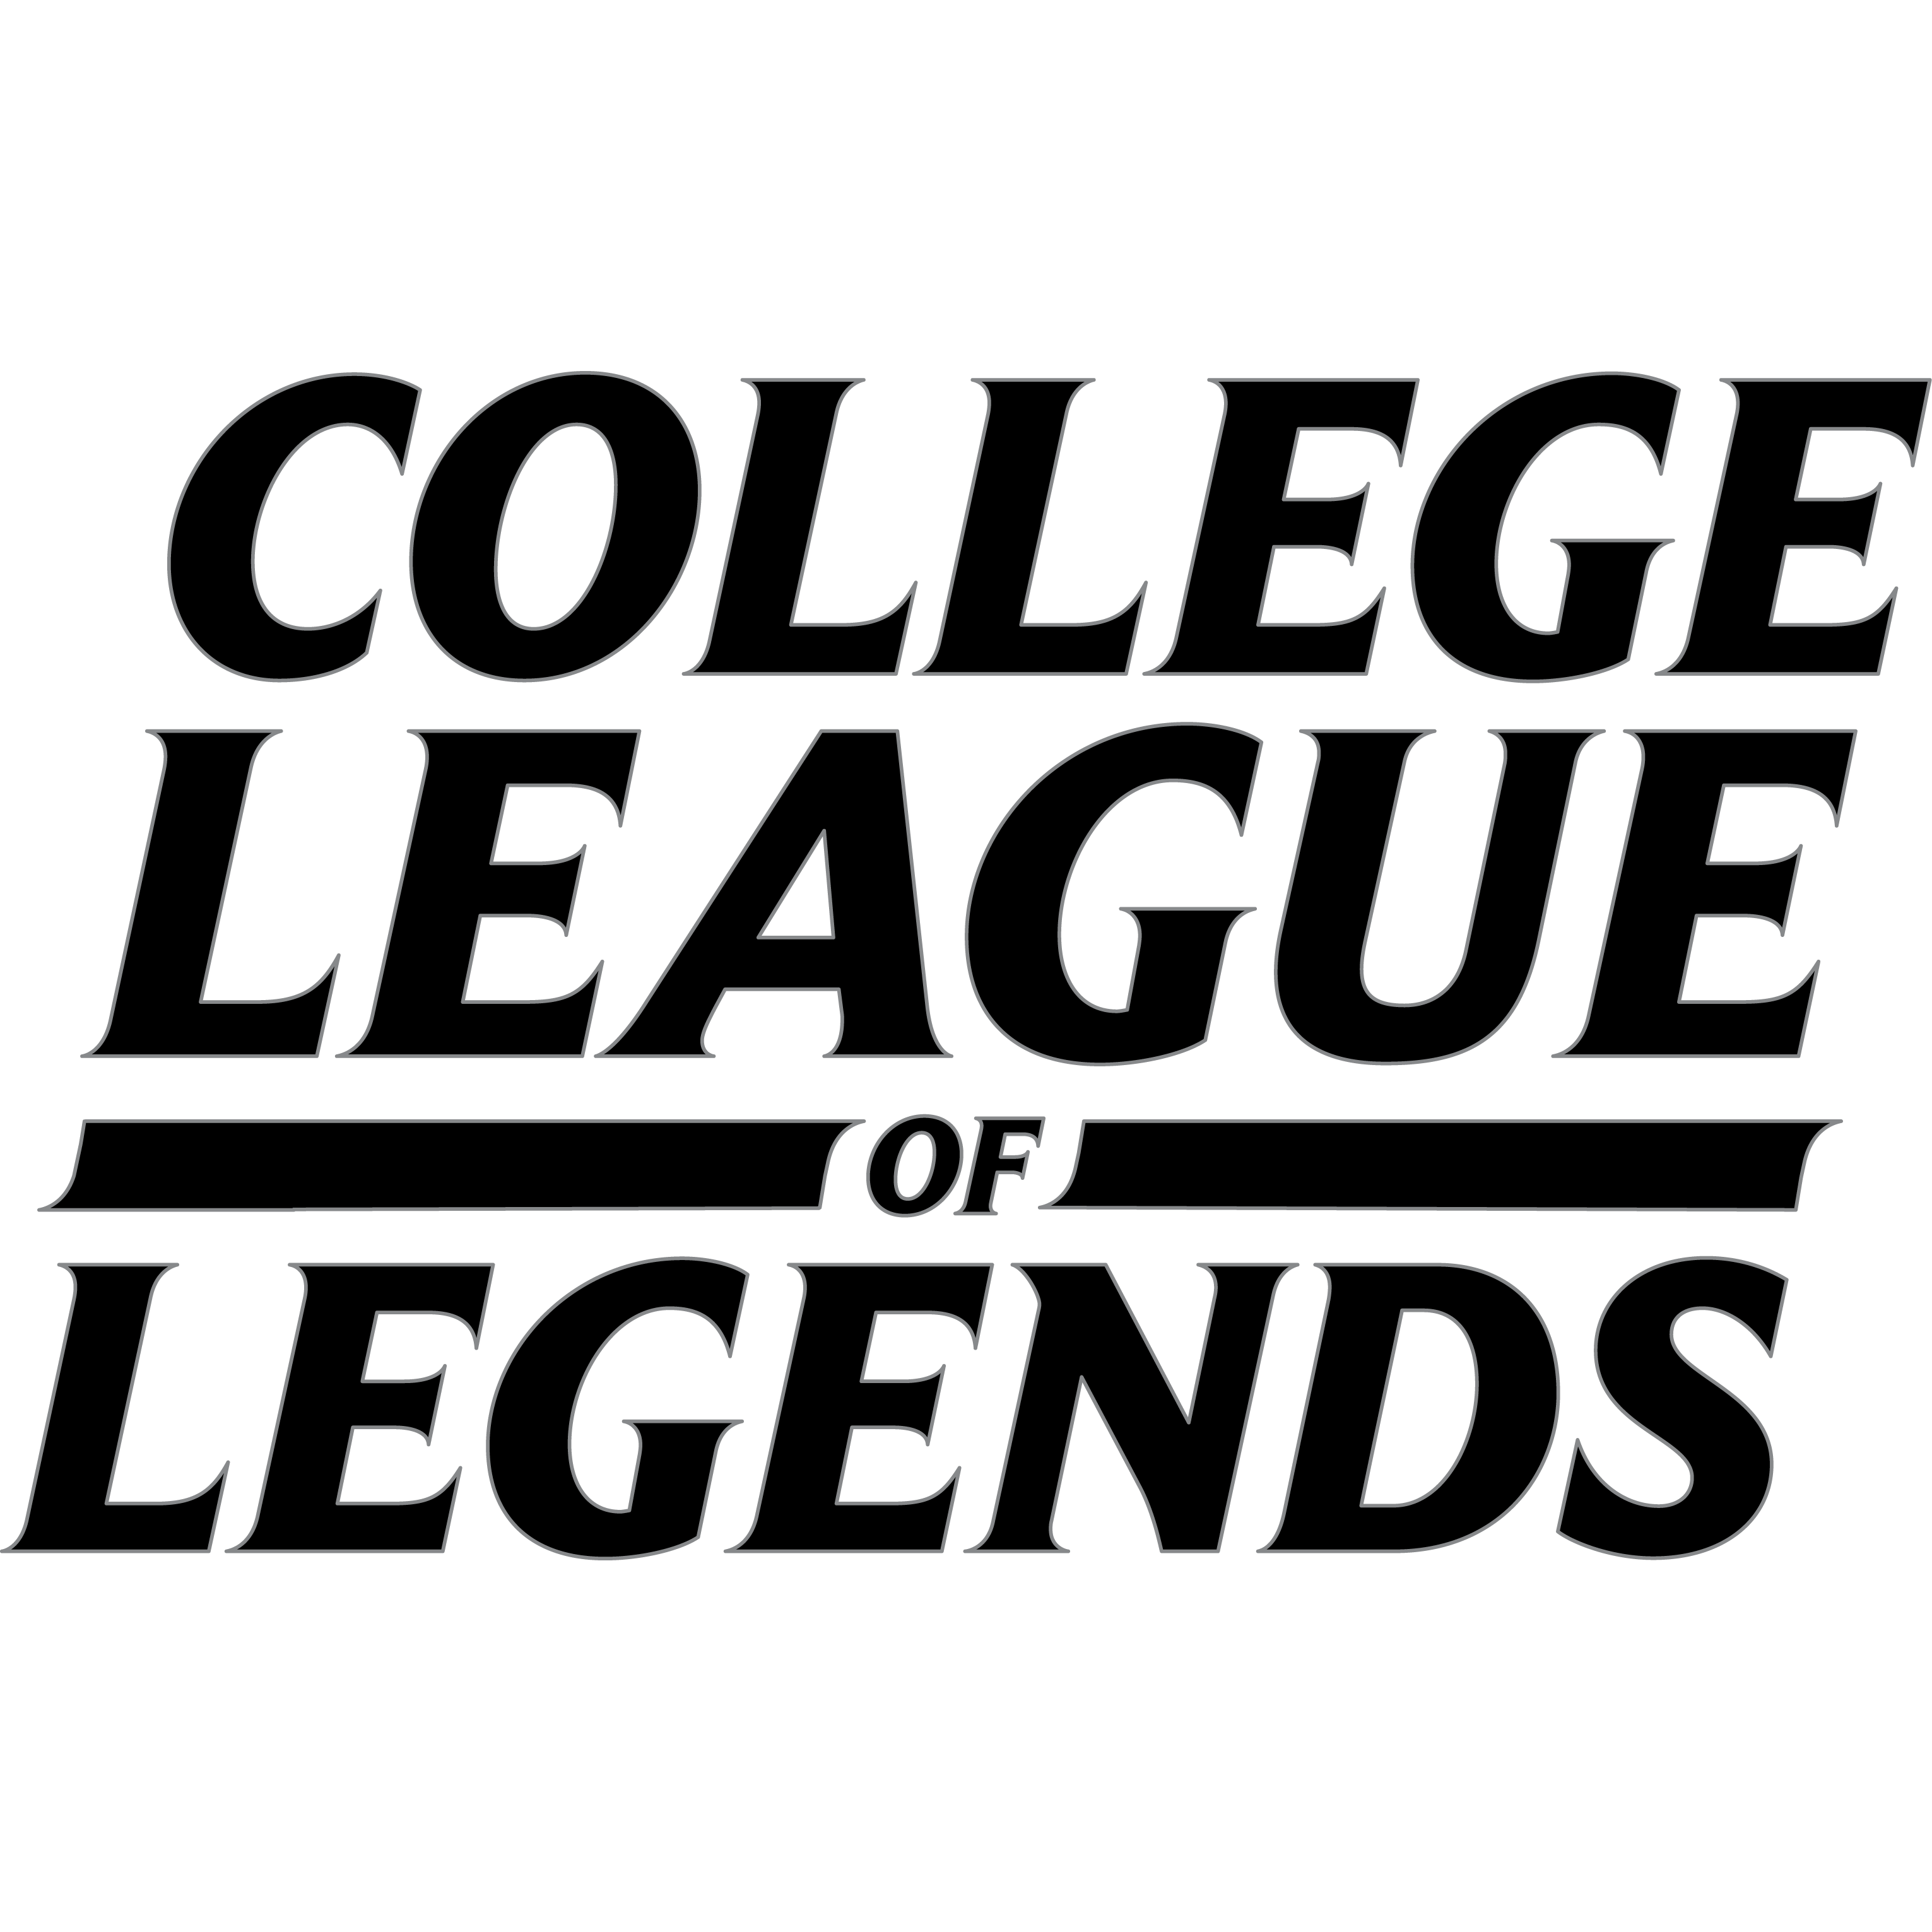 leauge of legends ipl 5 clg